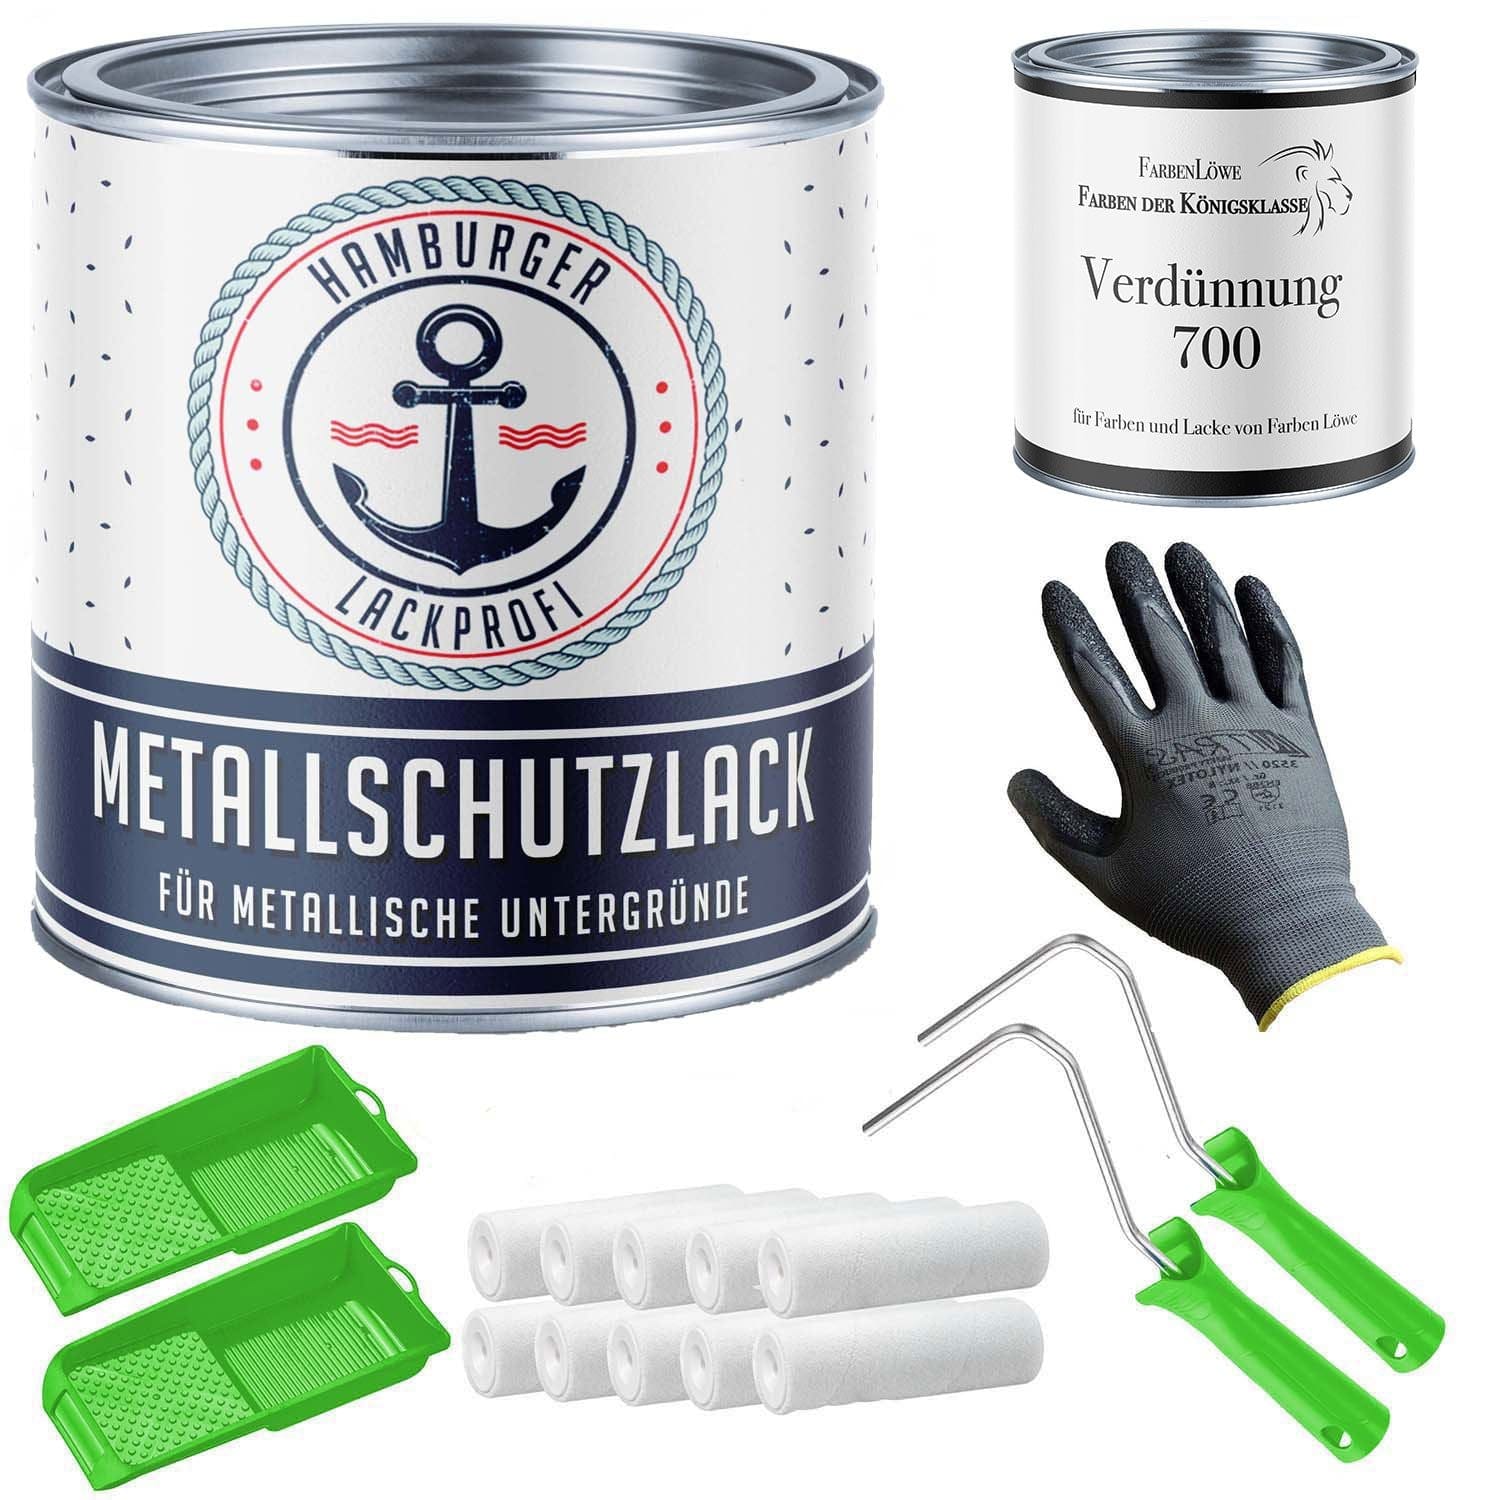 FARBENLÖWE Lacke & Beschichtungen Hamburger Lack-Profi Metallschutzlack in Nachtblau RAL 5022 mit Lackierset (X300) & Verdünnung (1 L) - 30% Sparangebot